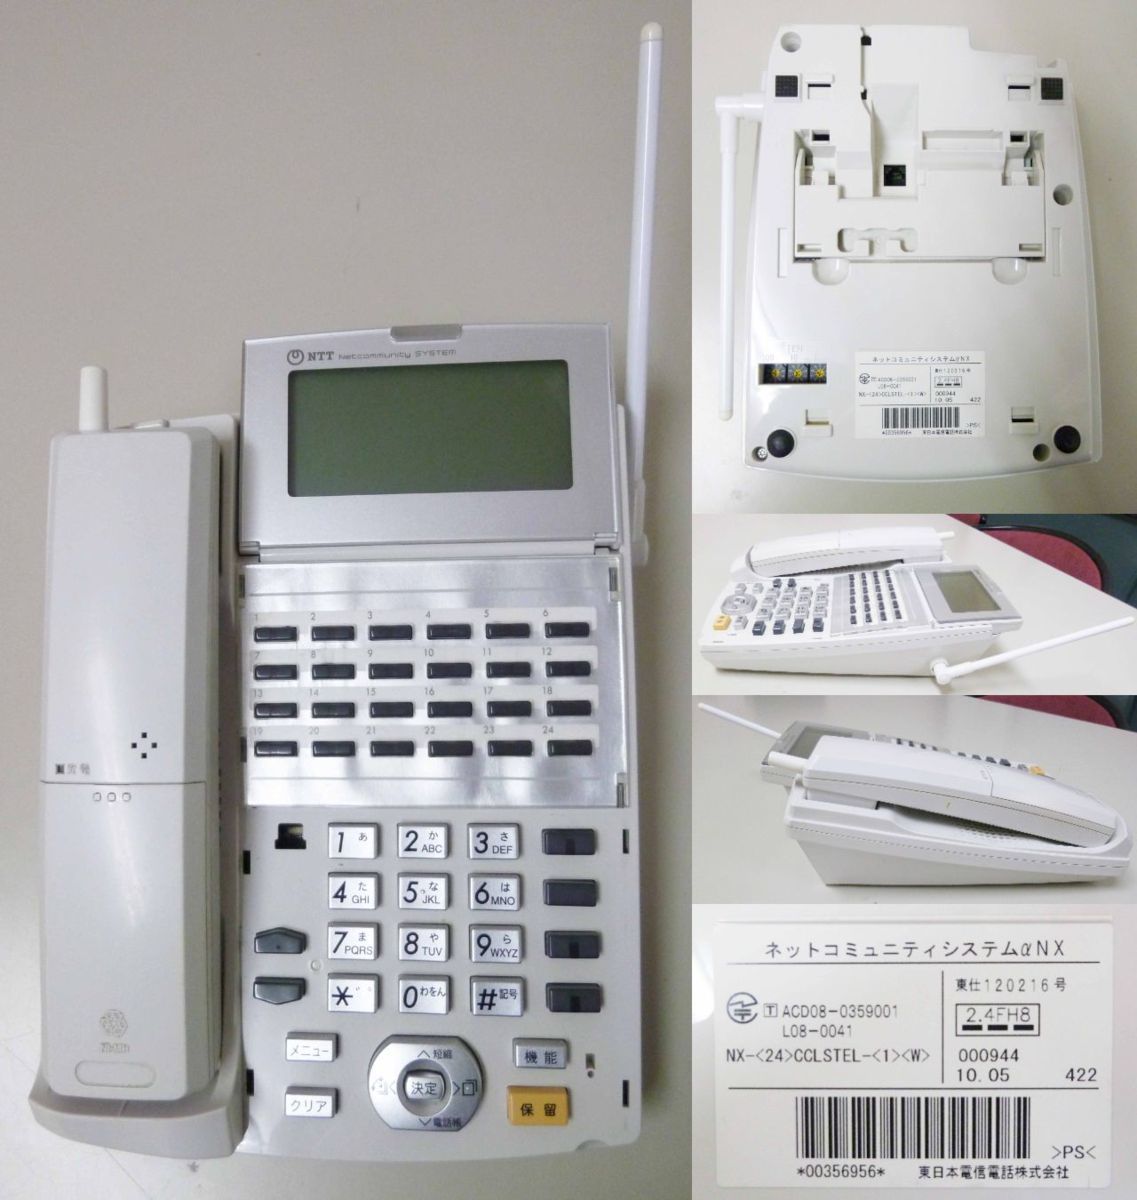 名作 NX-DCL-PS-1K ACD08-0359001 ネットコミュニティシステムαNX NTT TypeL-1 電話 セット 主装置  デジタルコードレス8台 ビジネスフォン44台 - その他 - hlt.no